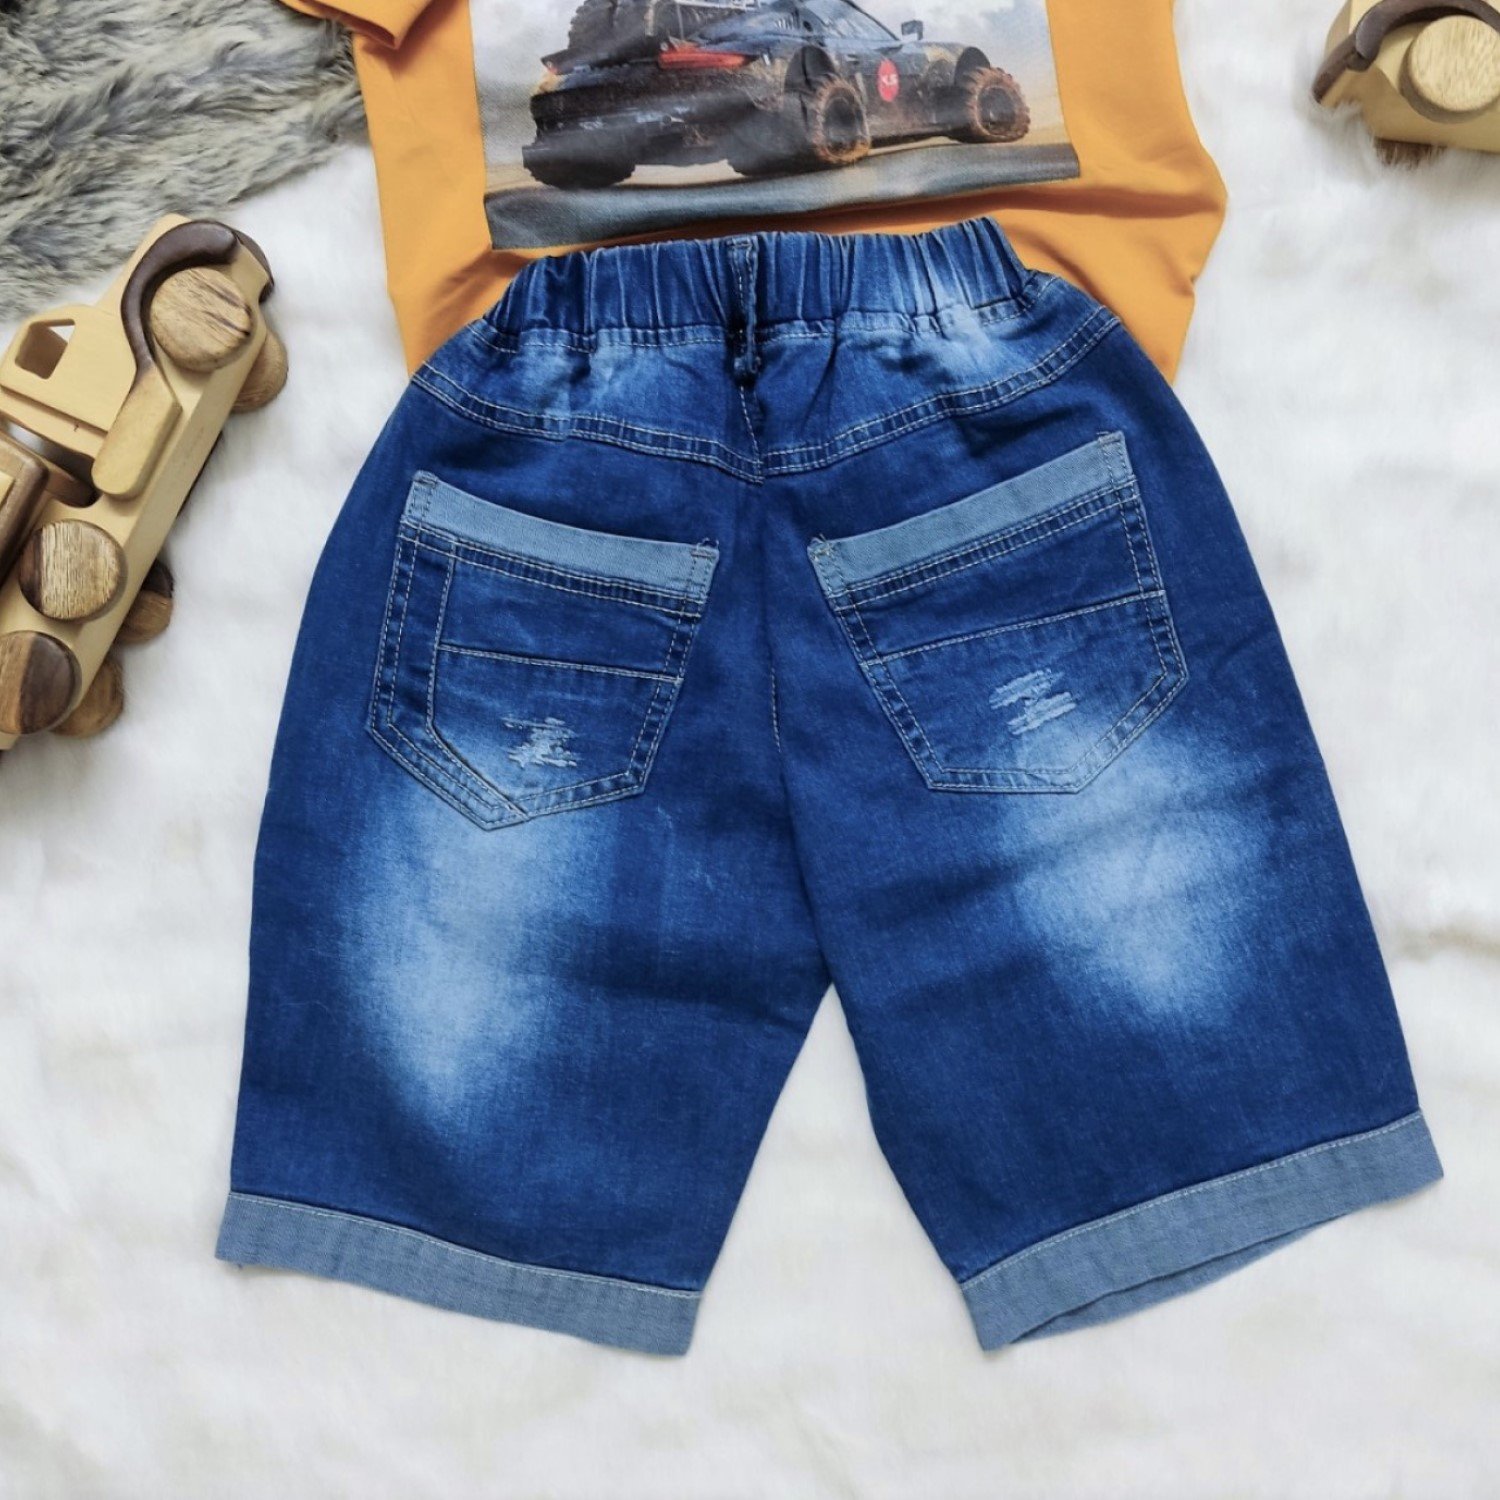 K0003518 Bộ quần jean thun co giãn áo thun cao cấp cho bé trai từ 6-12 tuổi (26-48kg)